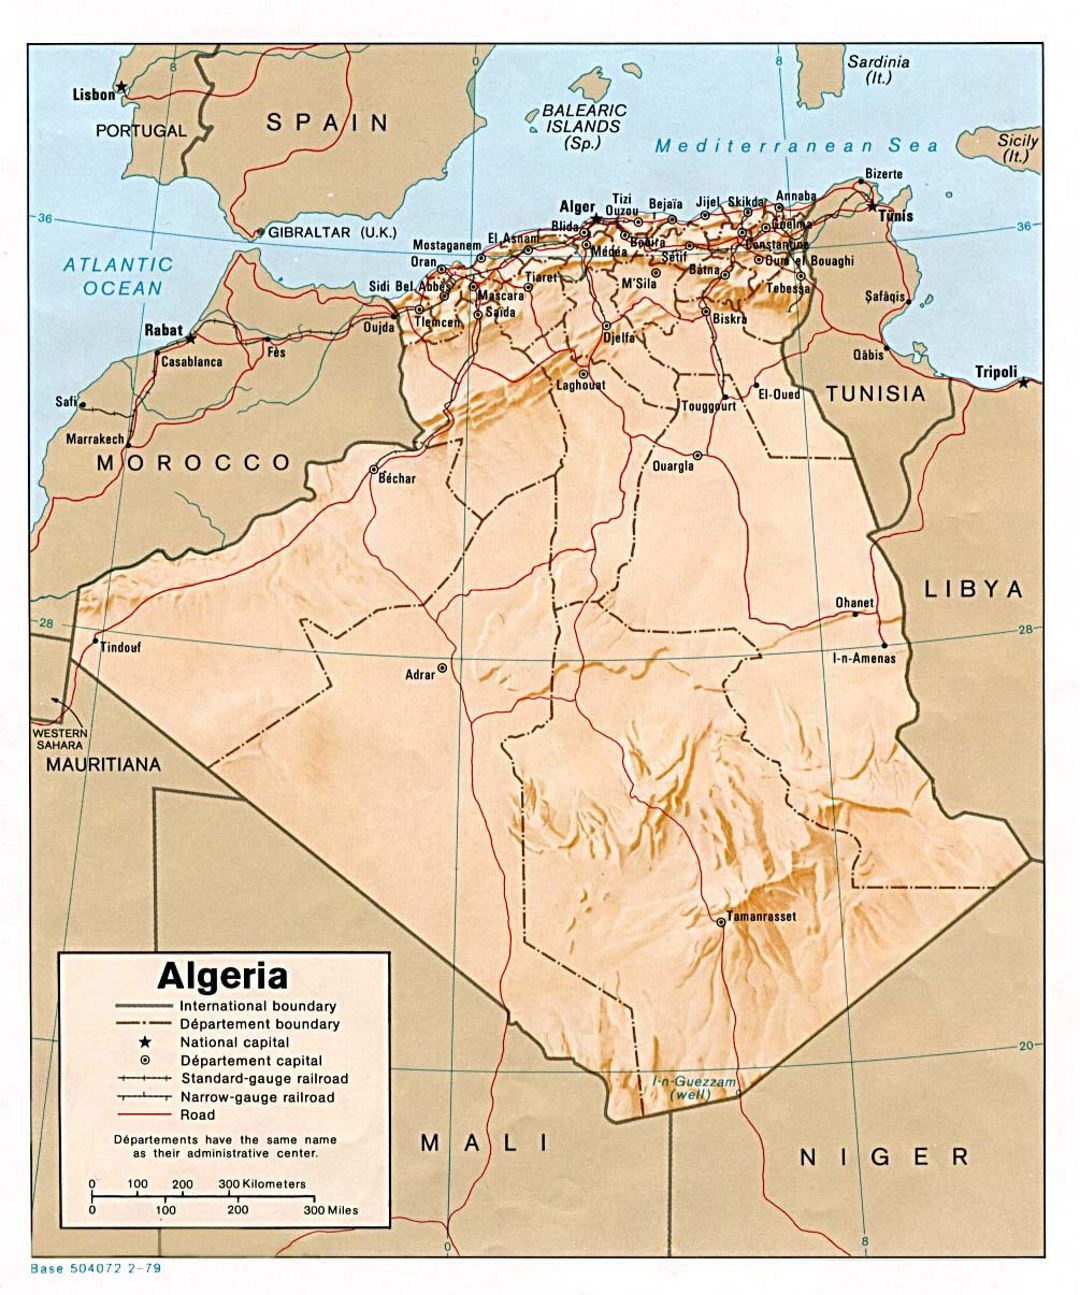 Detallado mapa político y administrativo de Argelia con socorro, carreteras, ferrocarriles y principales ciudades - 1979